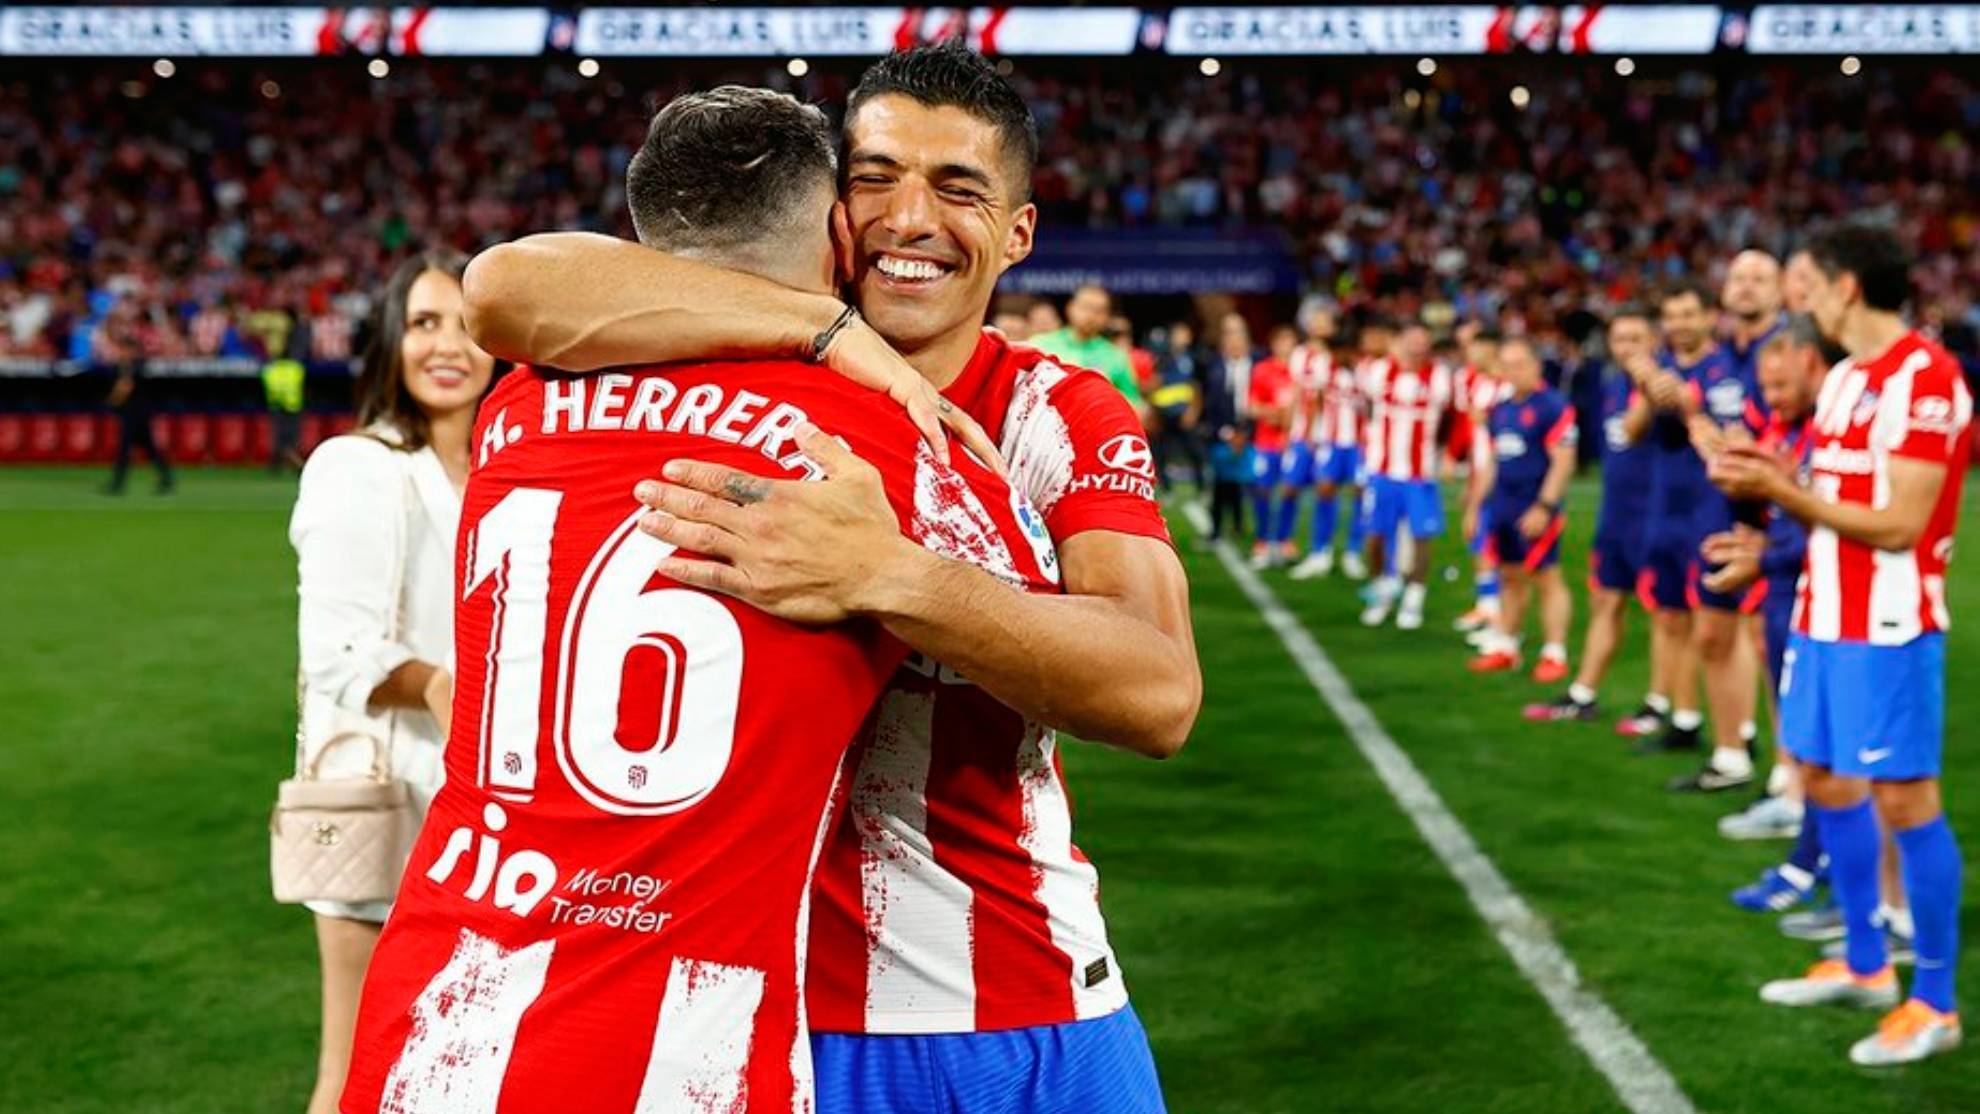 La emotiva despedida de Luis Suárez y Herrera en el Wanda Metropolitano